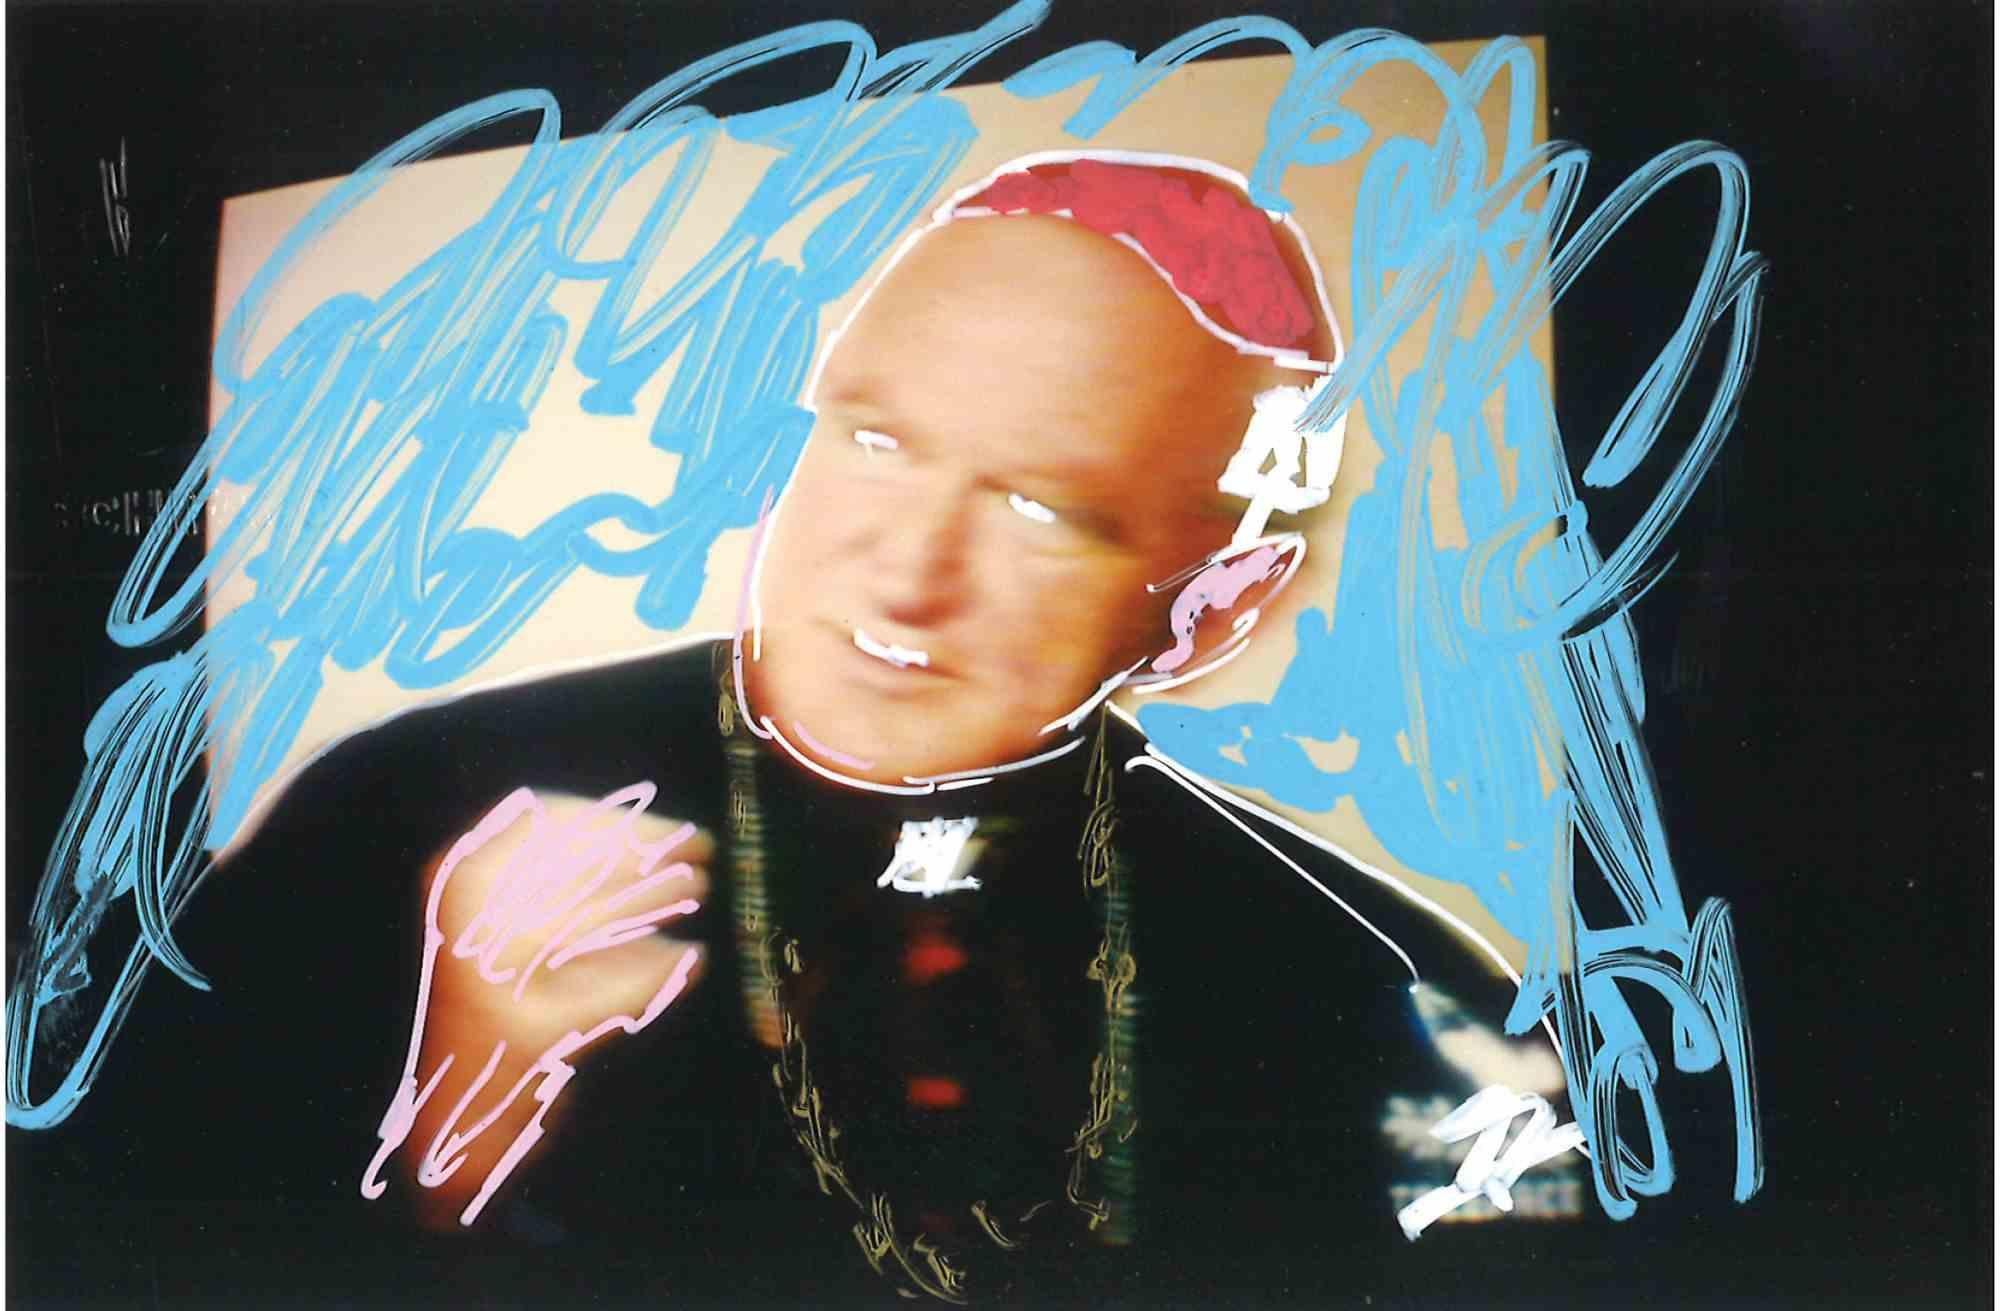 Le Cardinal est un  œuvre d'art réalisée par Mario Schifano, dans les années 1990.

Technique mixte sur photographie.

cm.10x15 . 

Monogramme au dos.

Bonnes conditions

 

Mario Schifano (Homs, 20 septembre 1934 - Rome, 26 janvier 1998) était un